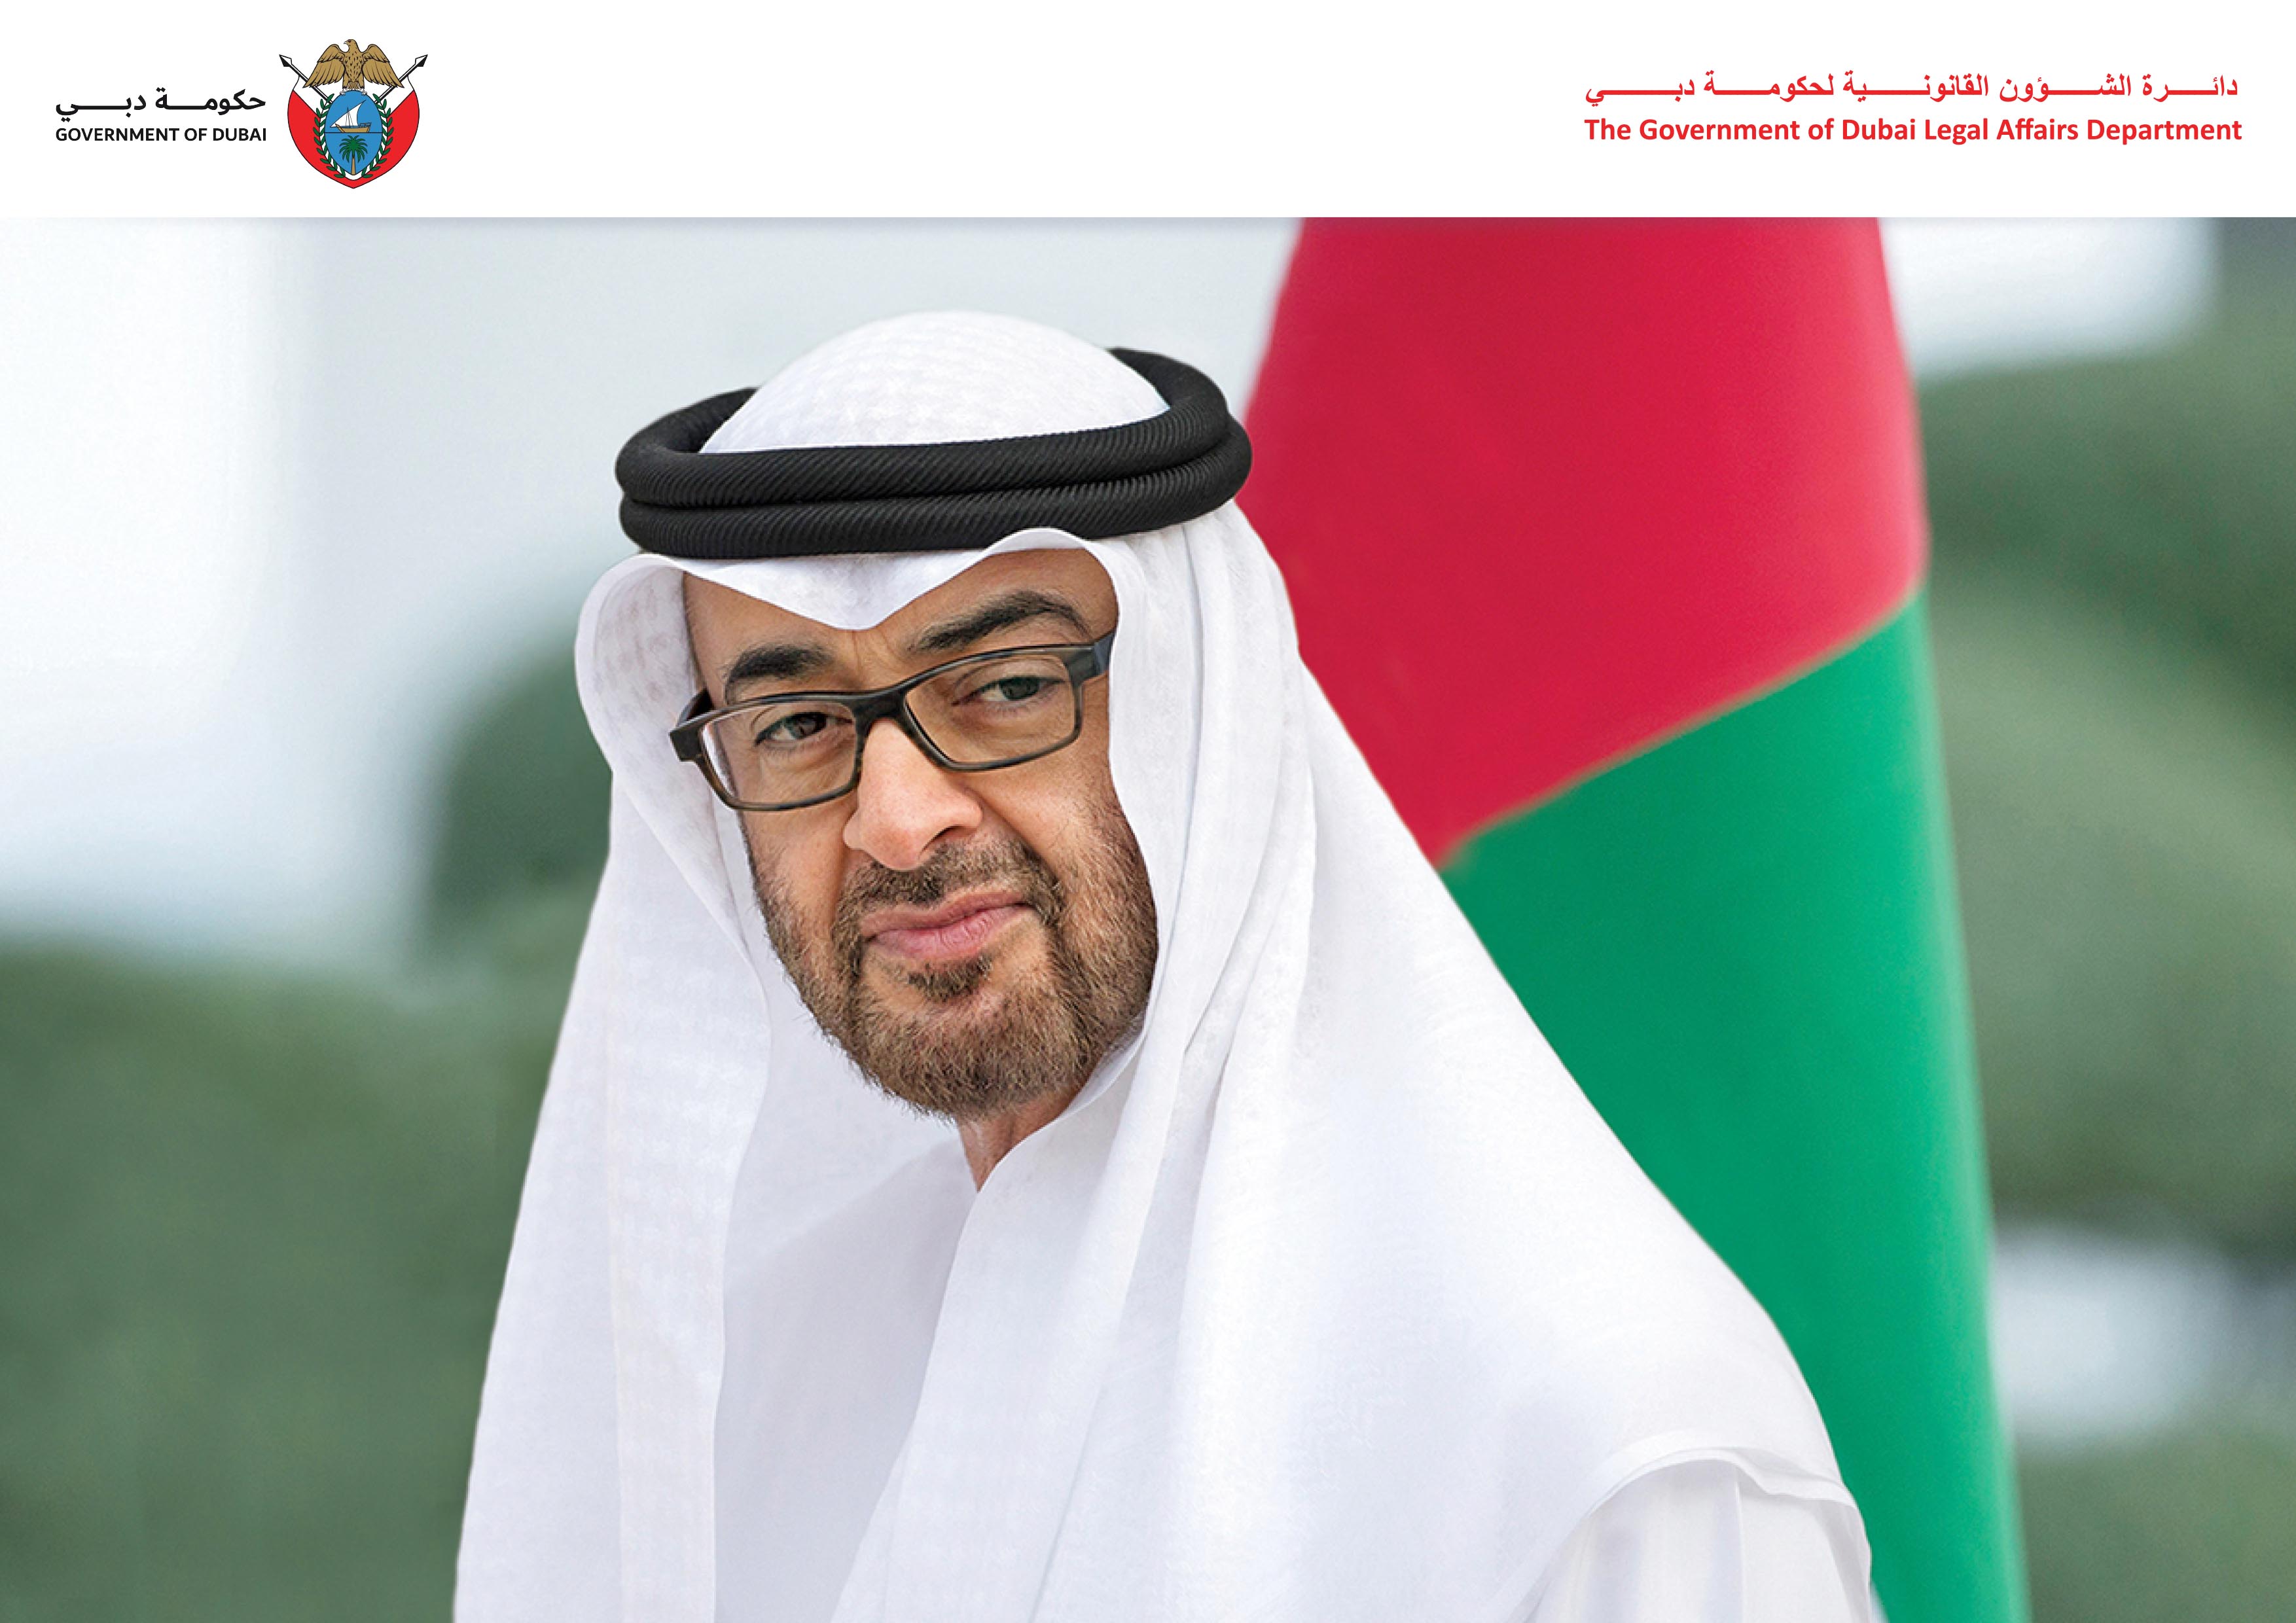 تصريح سعادة مدير عام دائرة الشؤون القانونية لحكومة دبي بمناسبة إعلان صاحب السمو رئيس الدولة 18 يوليو "يوم عهد الاتحاد" لدولة الإمارات